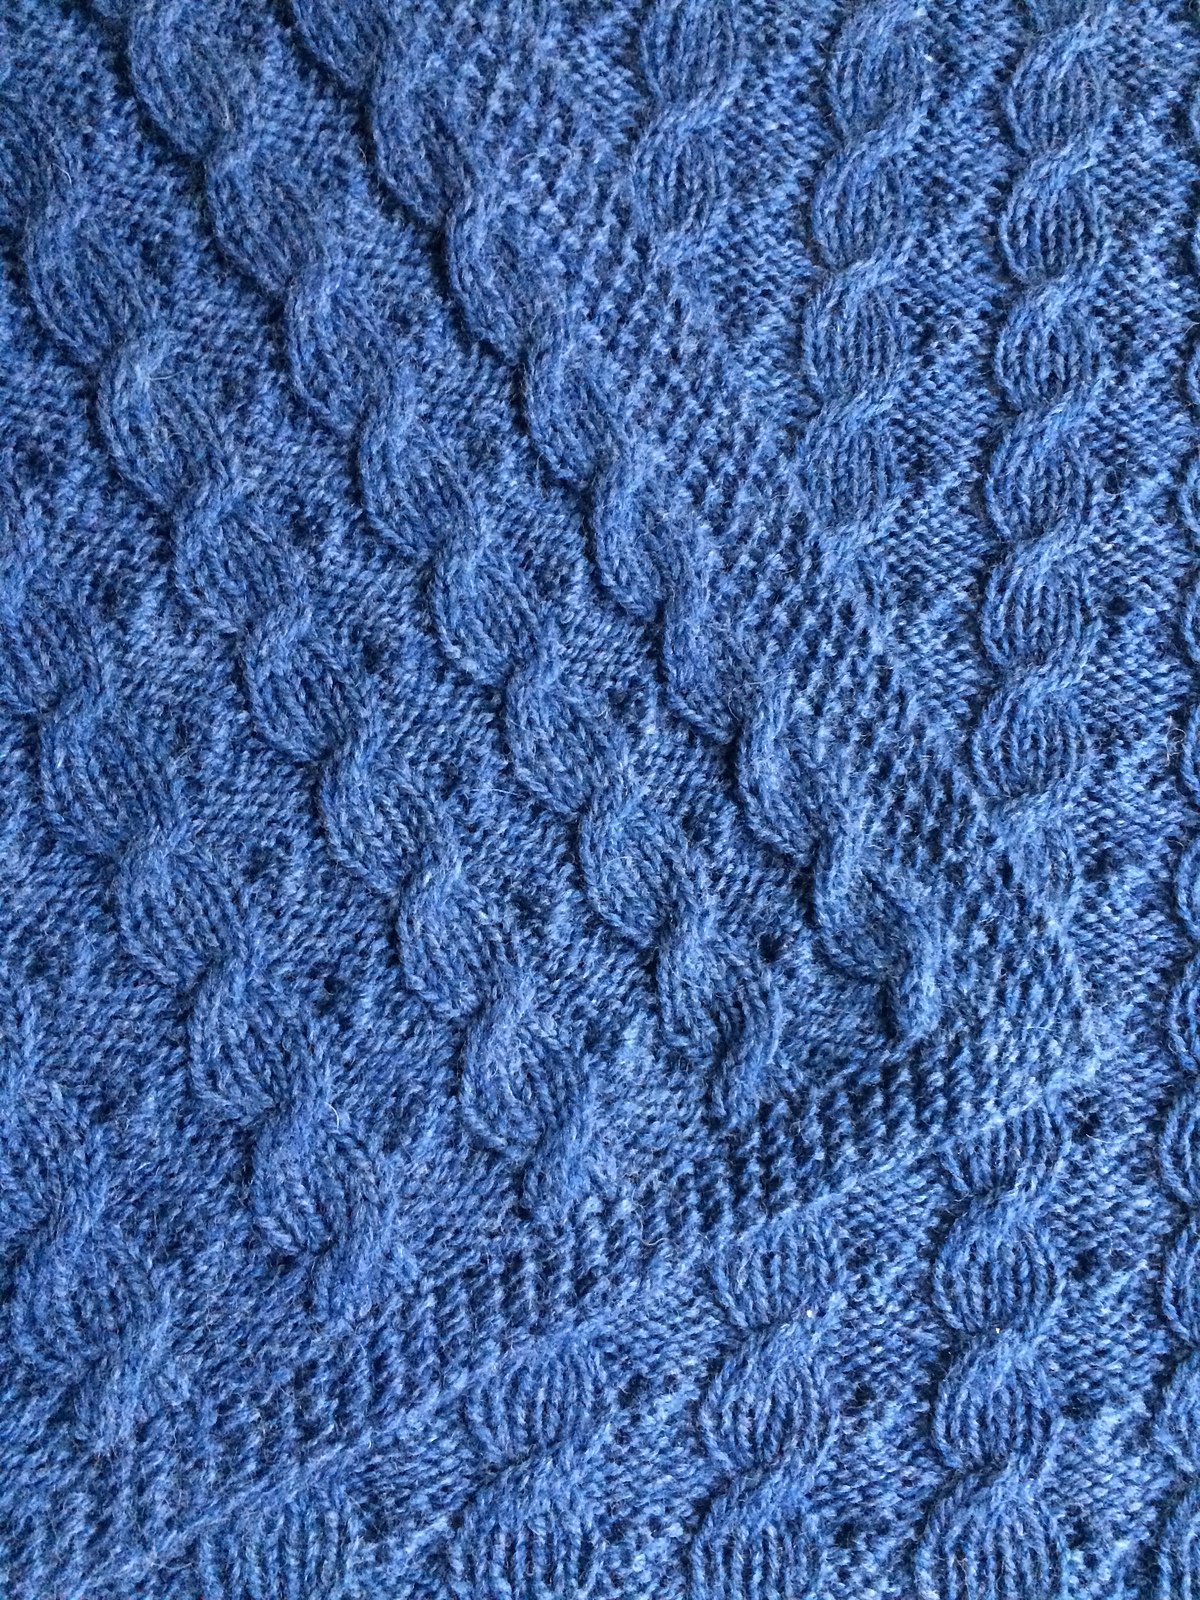 Knitting Afghan Patterns Free Reversible Blanket Knitting Patterns In The Loop Knitting